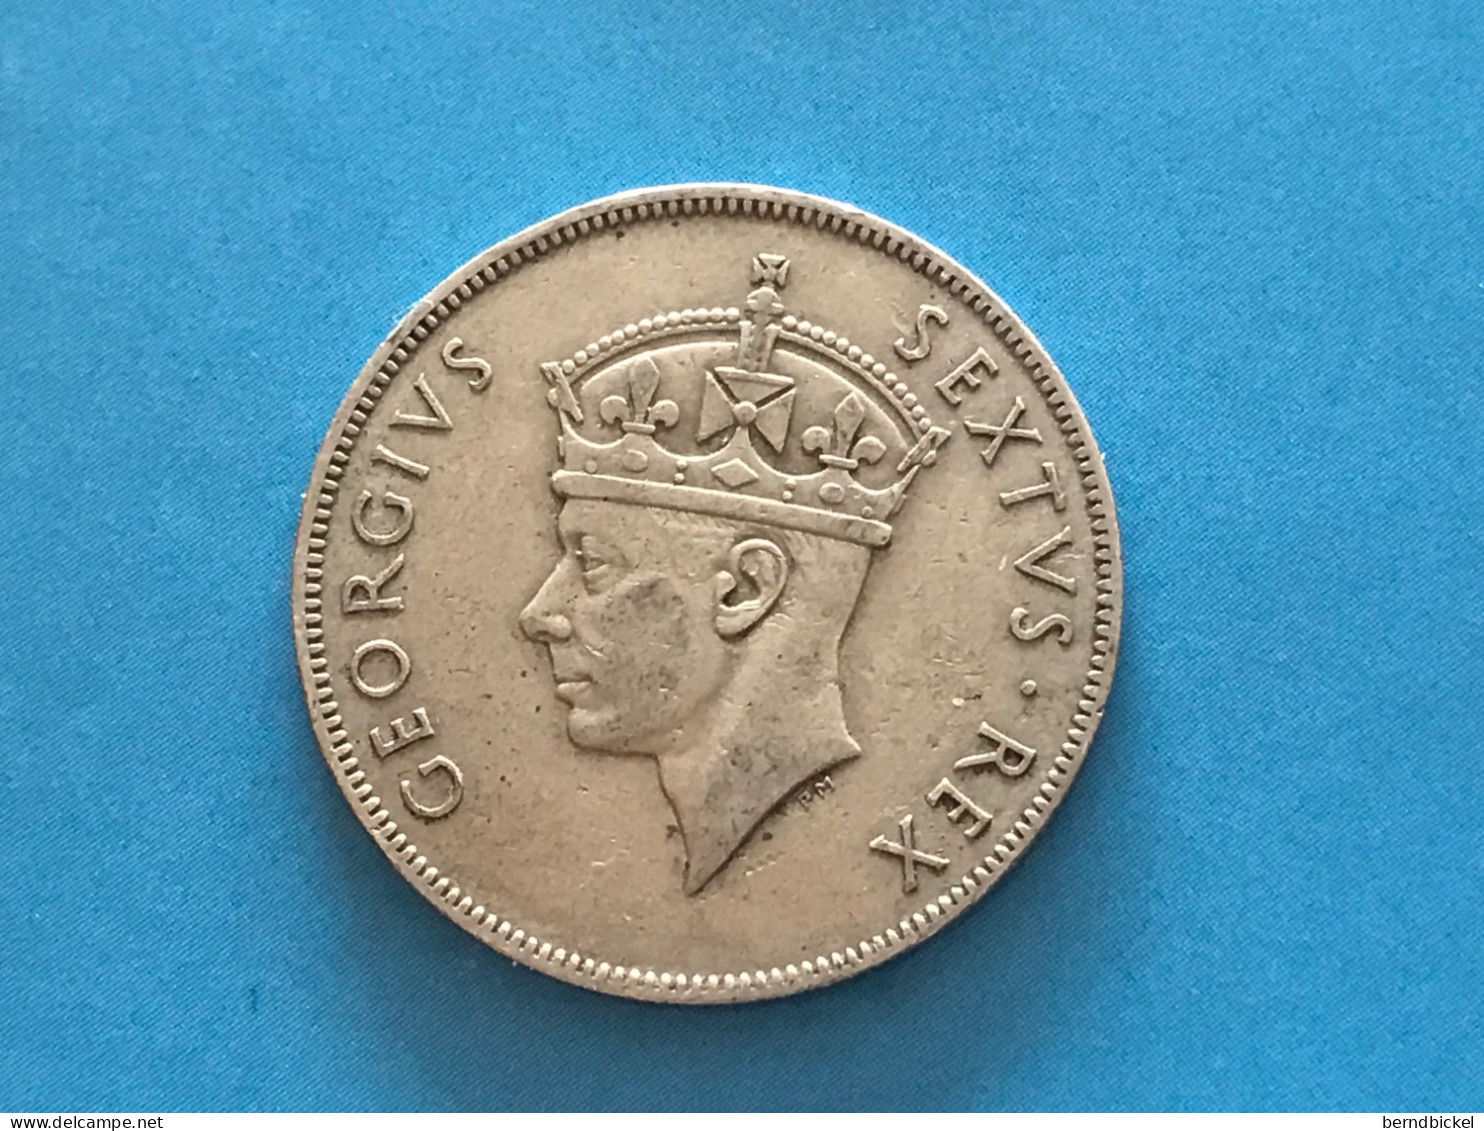 Münze Münzen Umlaufmünze East Africa 1 Shilling 1949 Ohne Münzzeichen - Kolonien